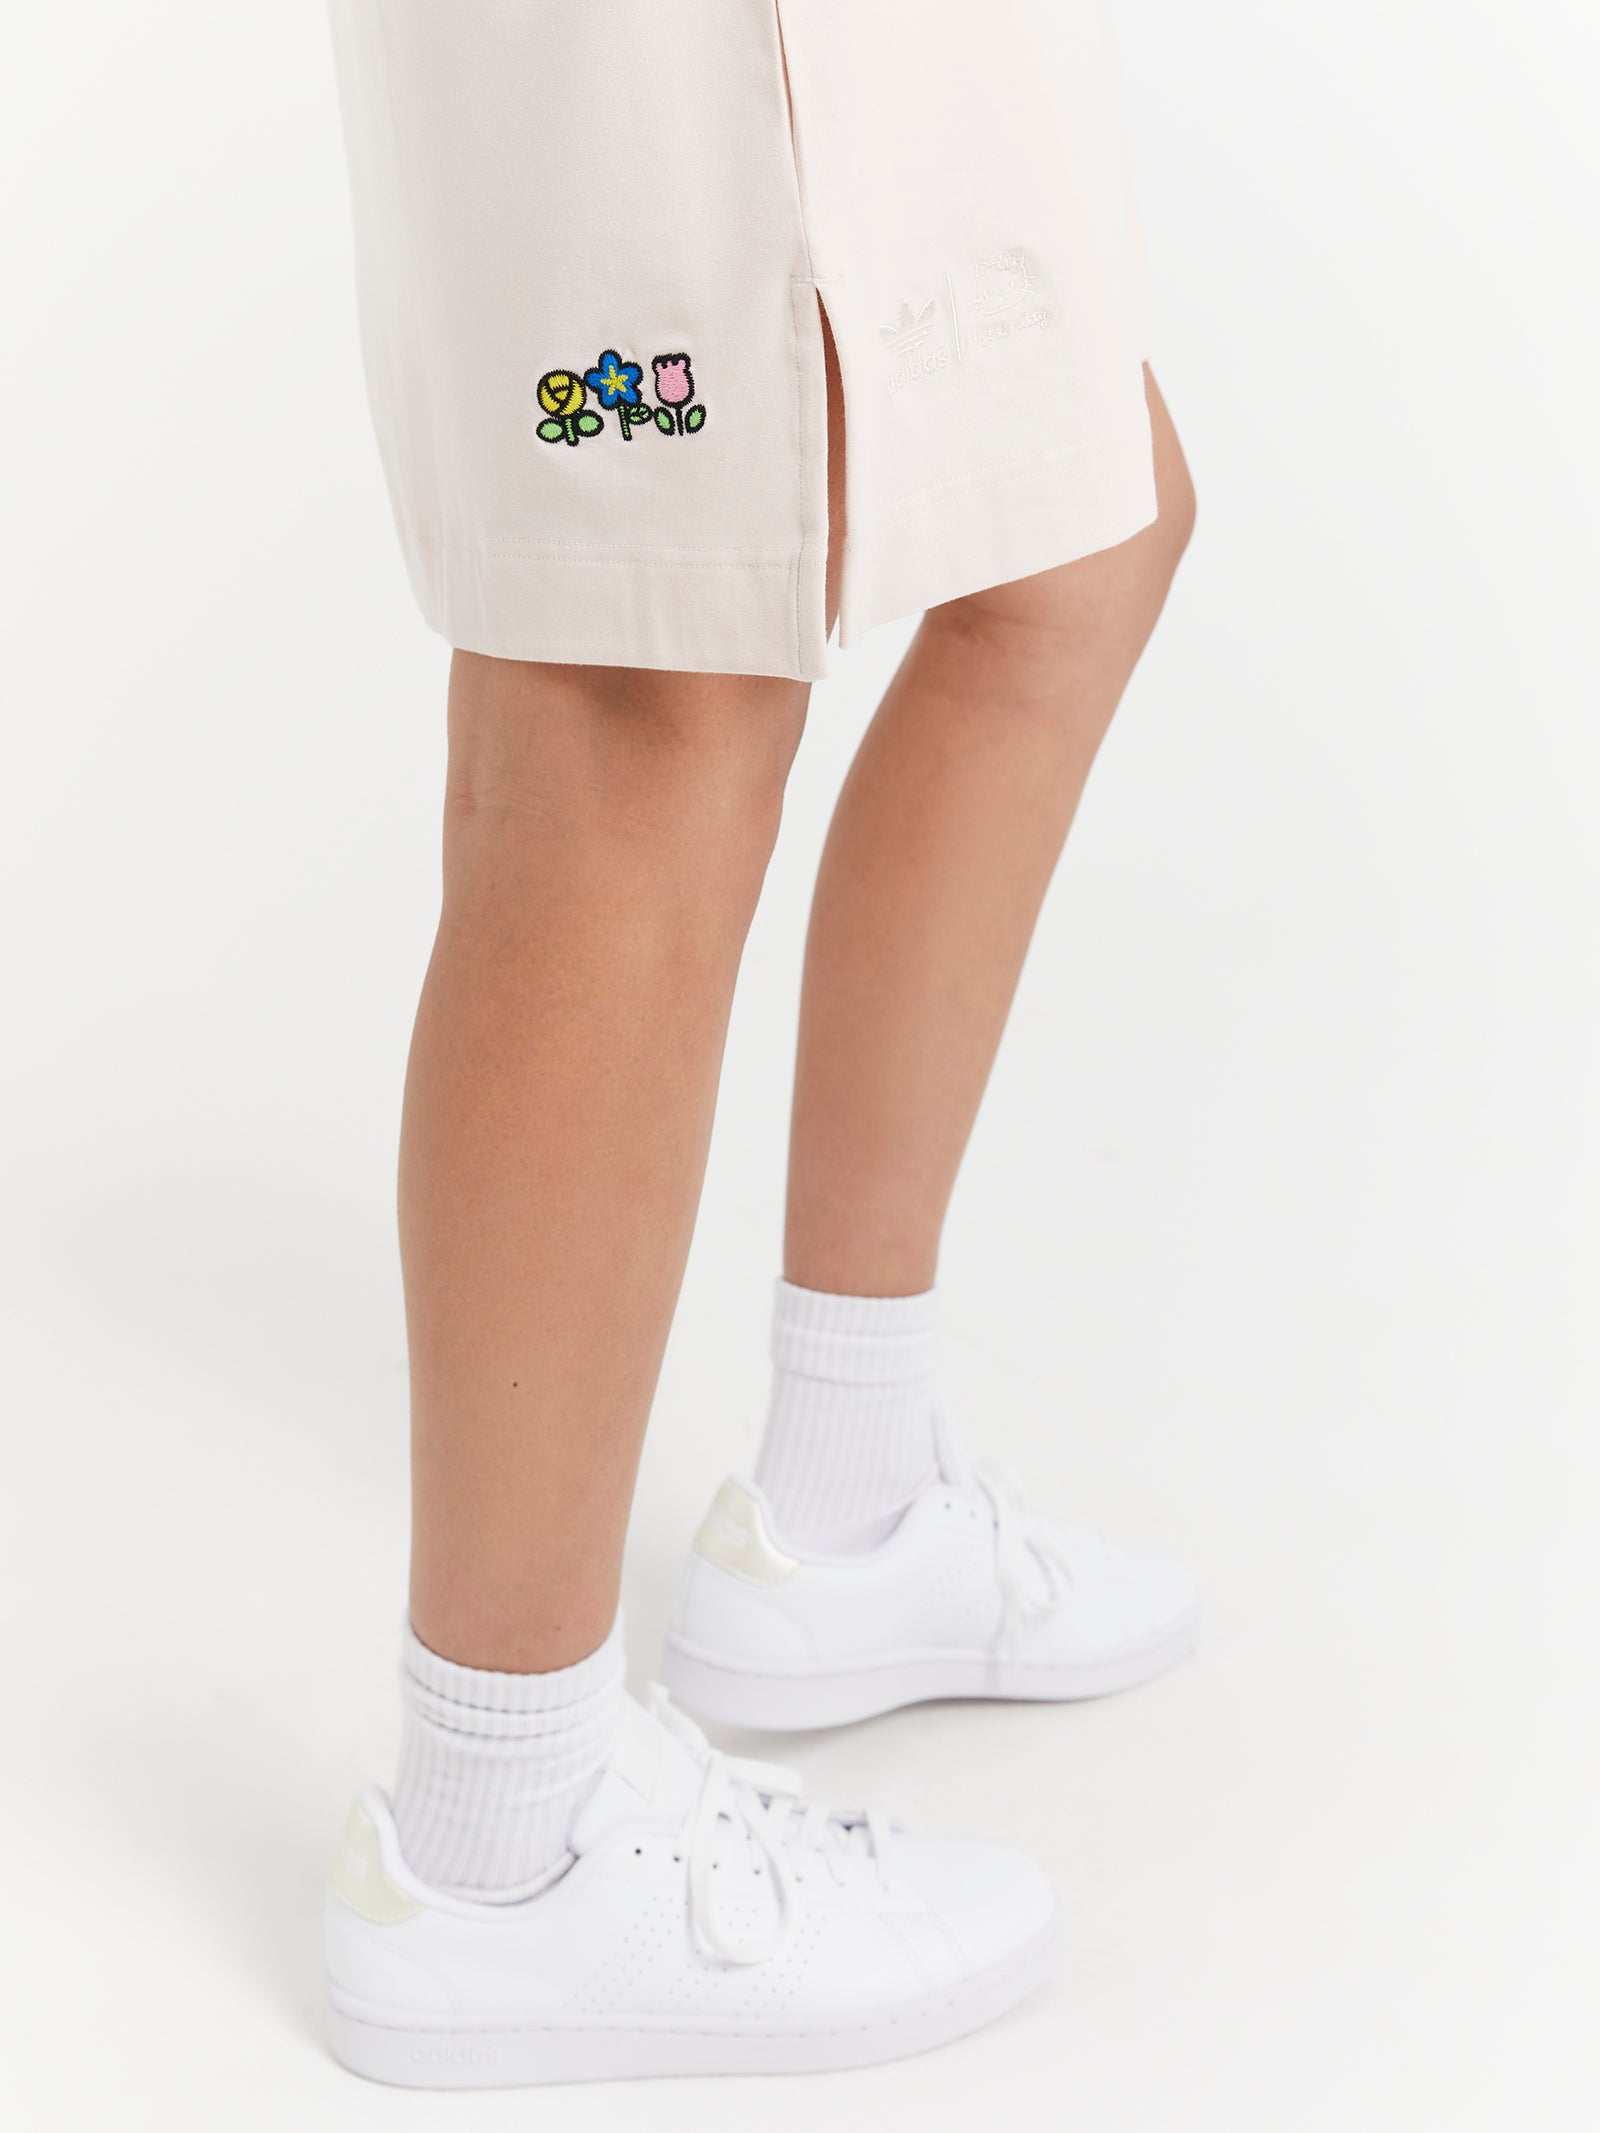 Adidas Originals x Hello Kitty Dress in Wonder Quartz